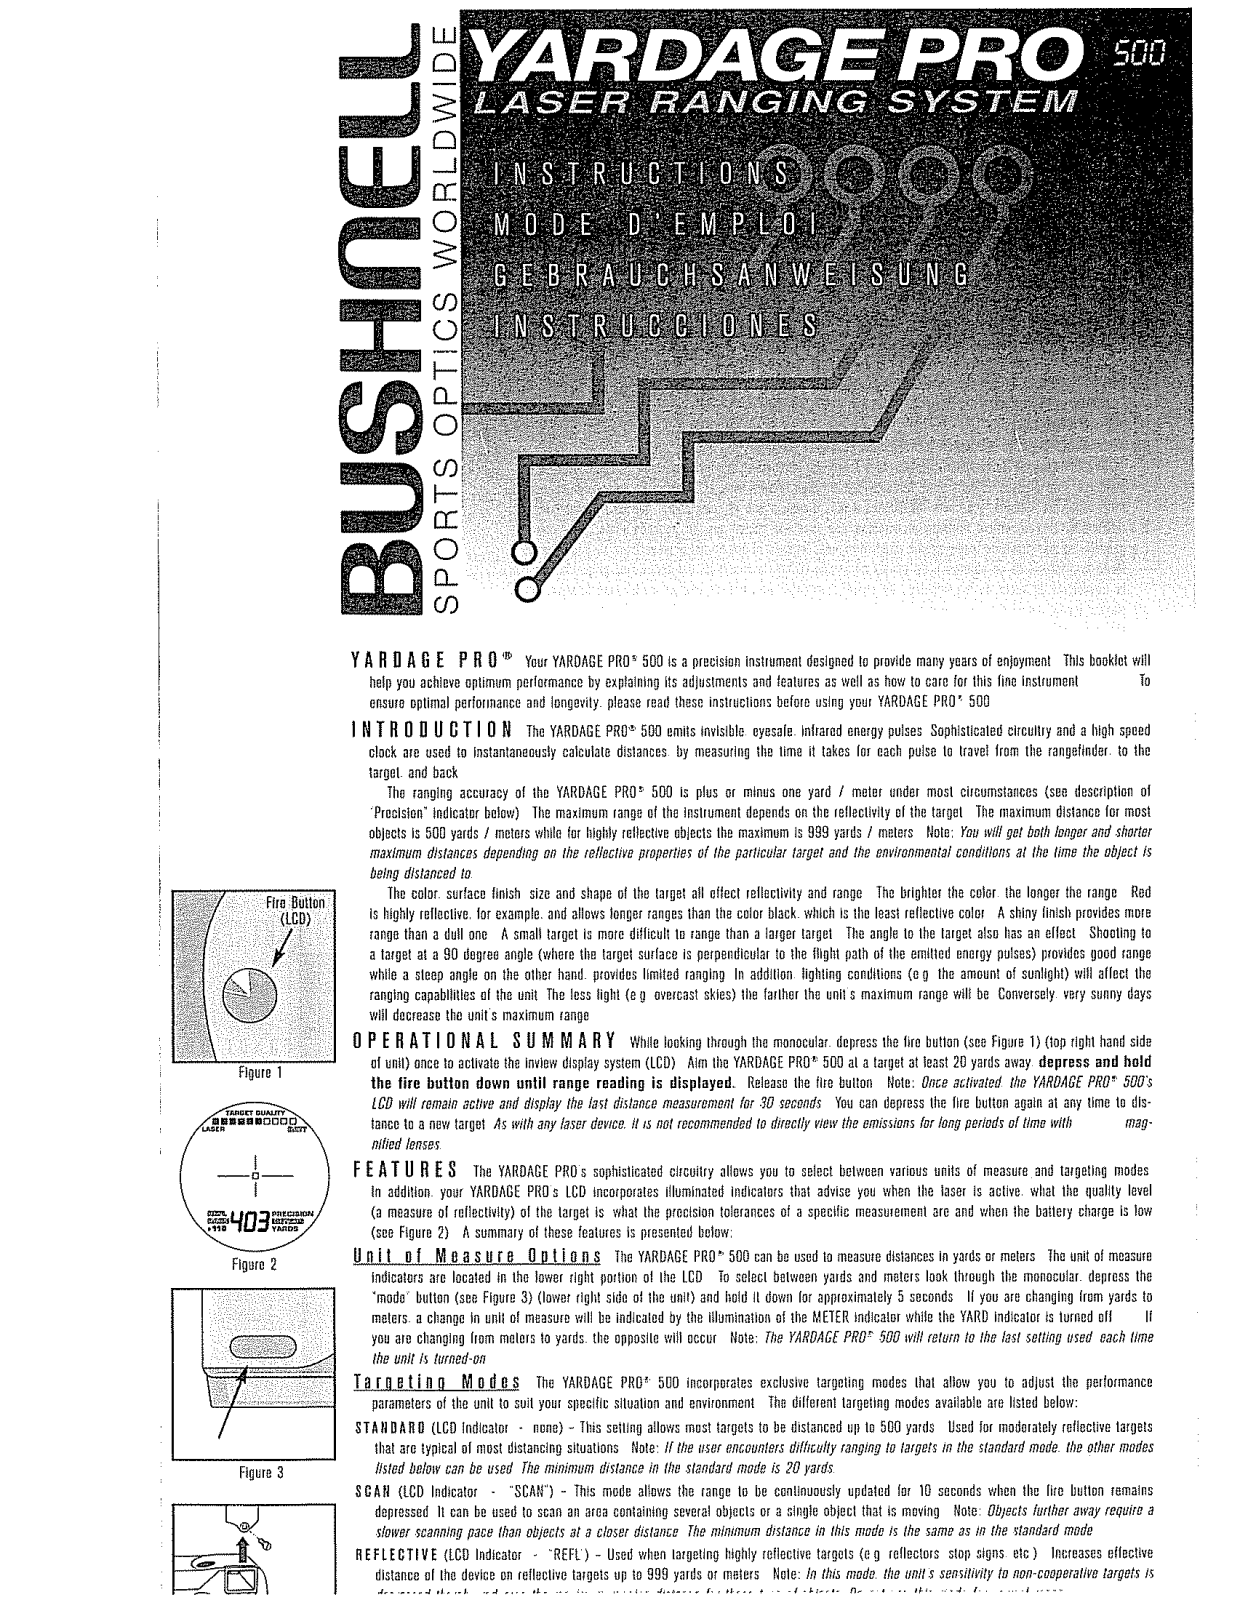 Bushnell Yardage Pro 500 Instruction Manual